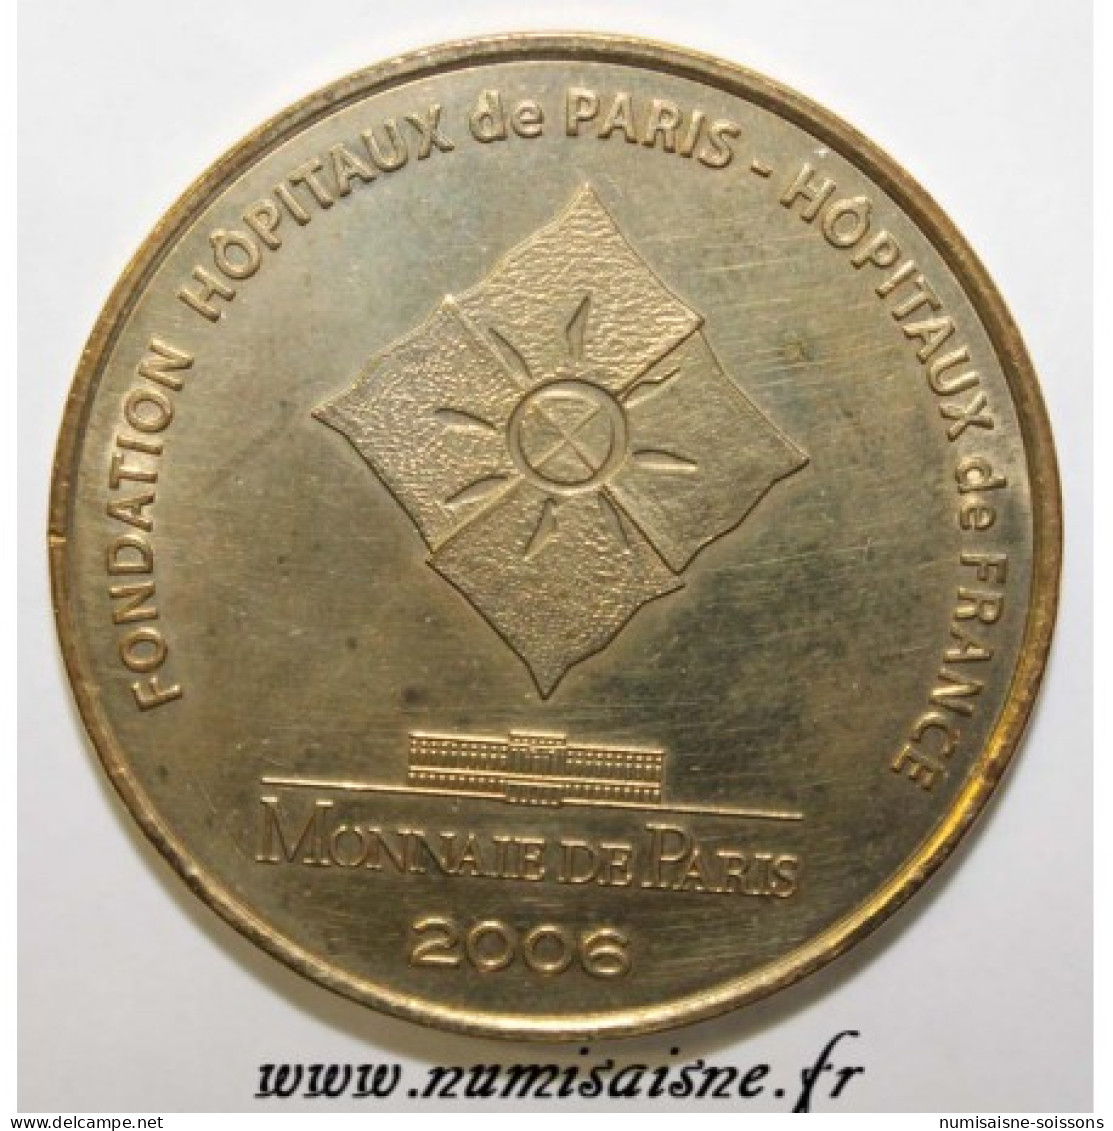 75 - PARIS - PIÉCES JAUNES - FONDATION DES HOPITAUX DE PARIS ET DE FRANCE - MDP - 2006 - 2006